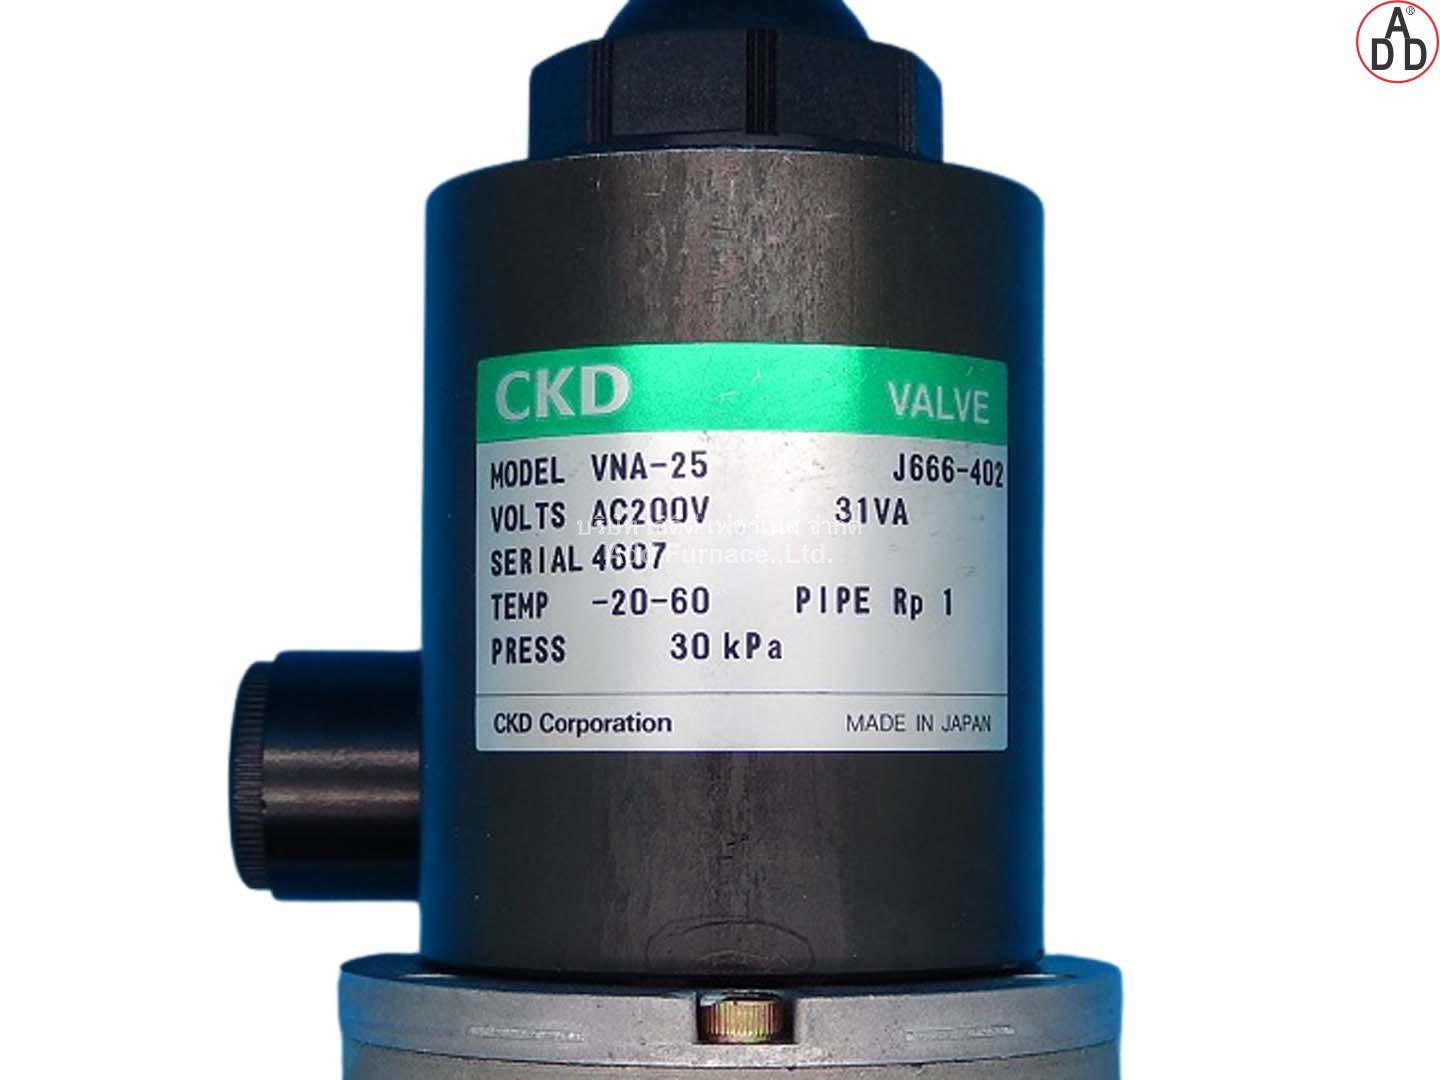 CKD MODEL VNA-25 AC200V - บริษัท เอดีดี เฟอร์เนส จำกัด